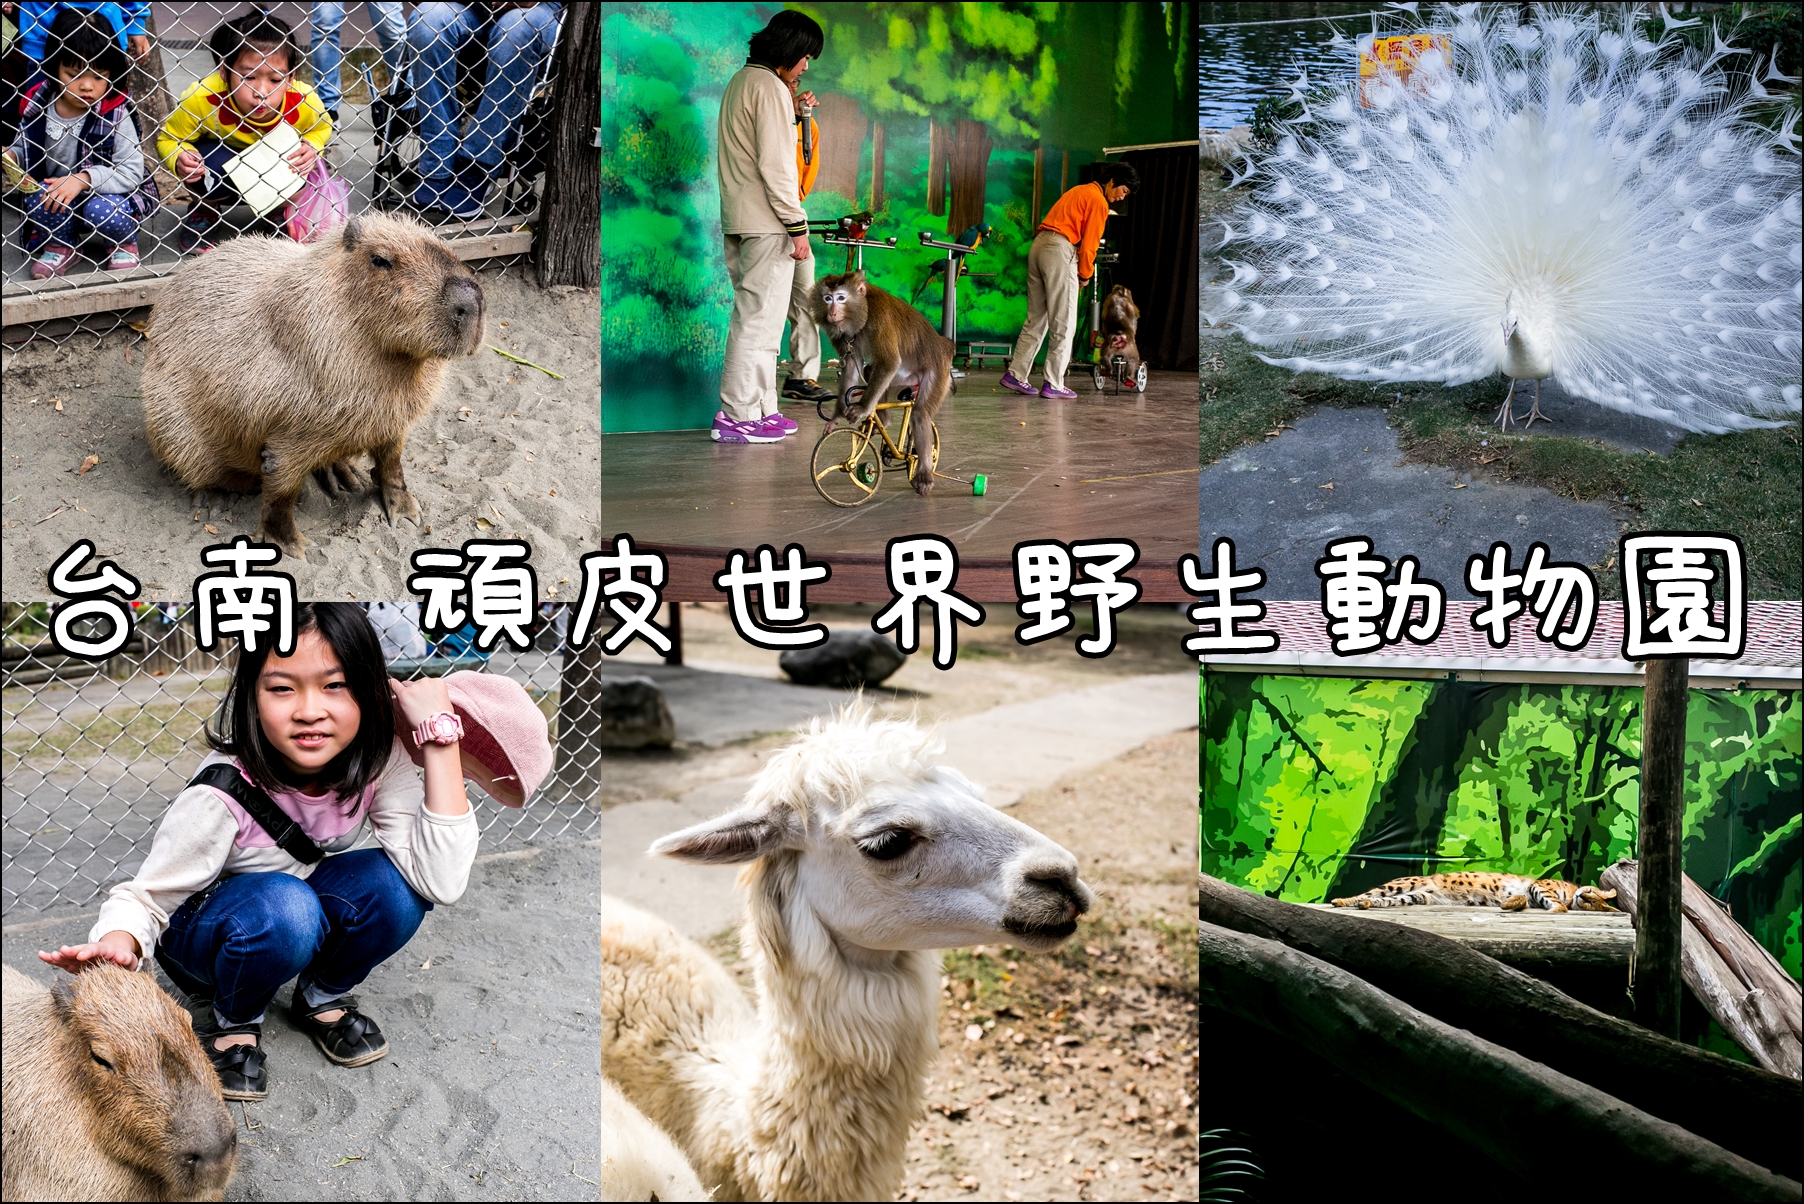 台南．親子一日遊．南台灣最大的野生動物園．頑皮世界野生動物園．超近距離餵食呆萌水豚．大小朋友玩得不亦樂乎